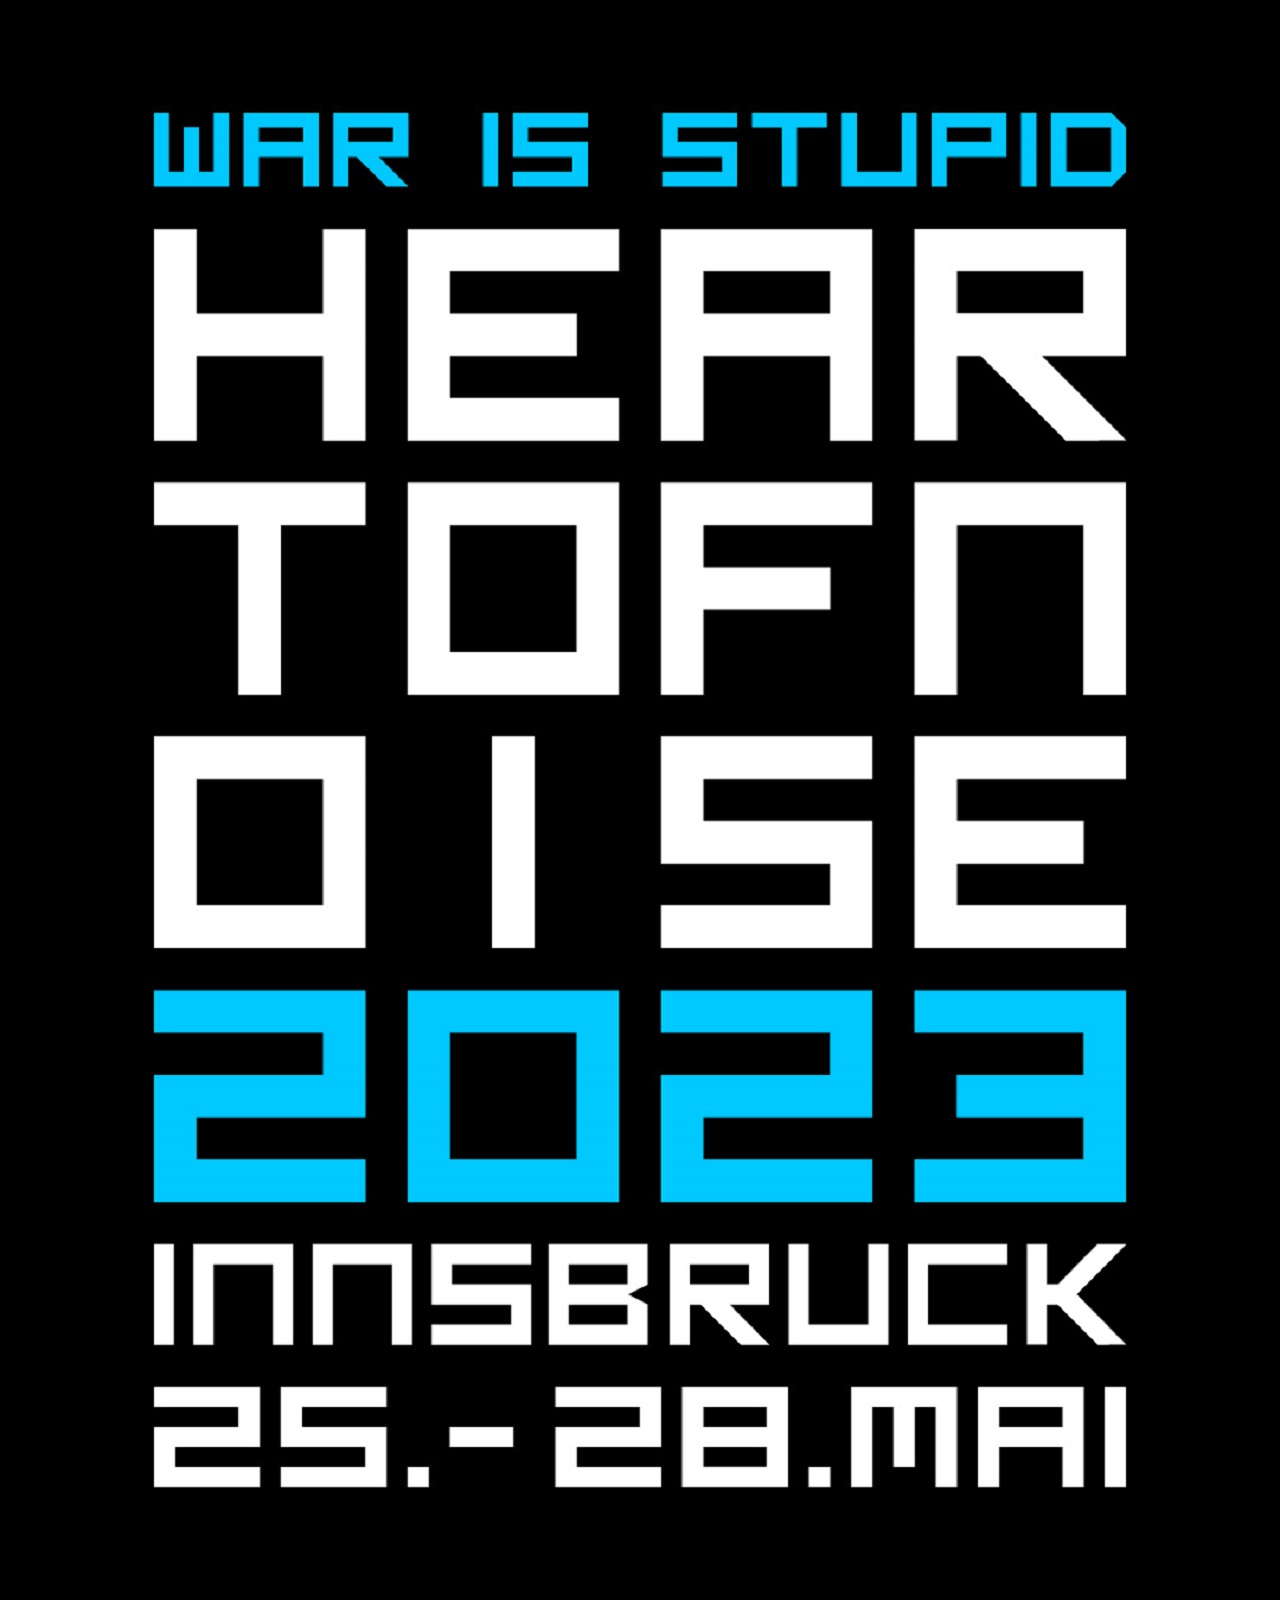 Heart of Noise Logo "War is stupid" Flyer 2023